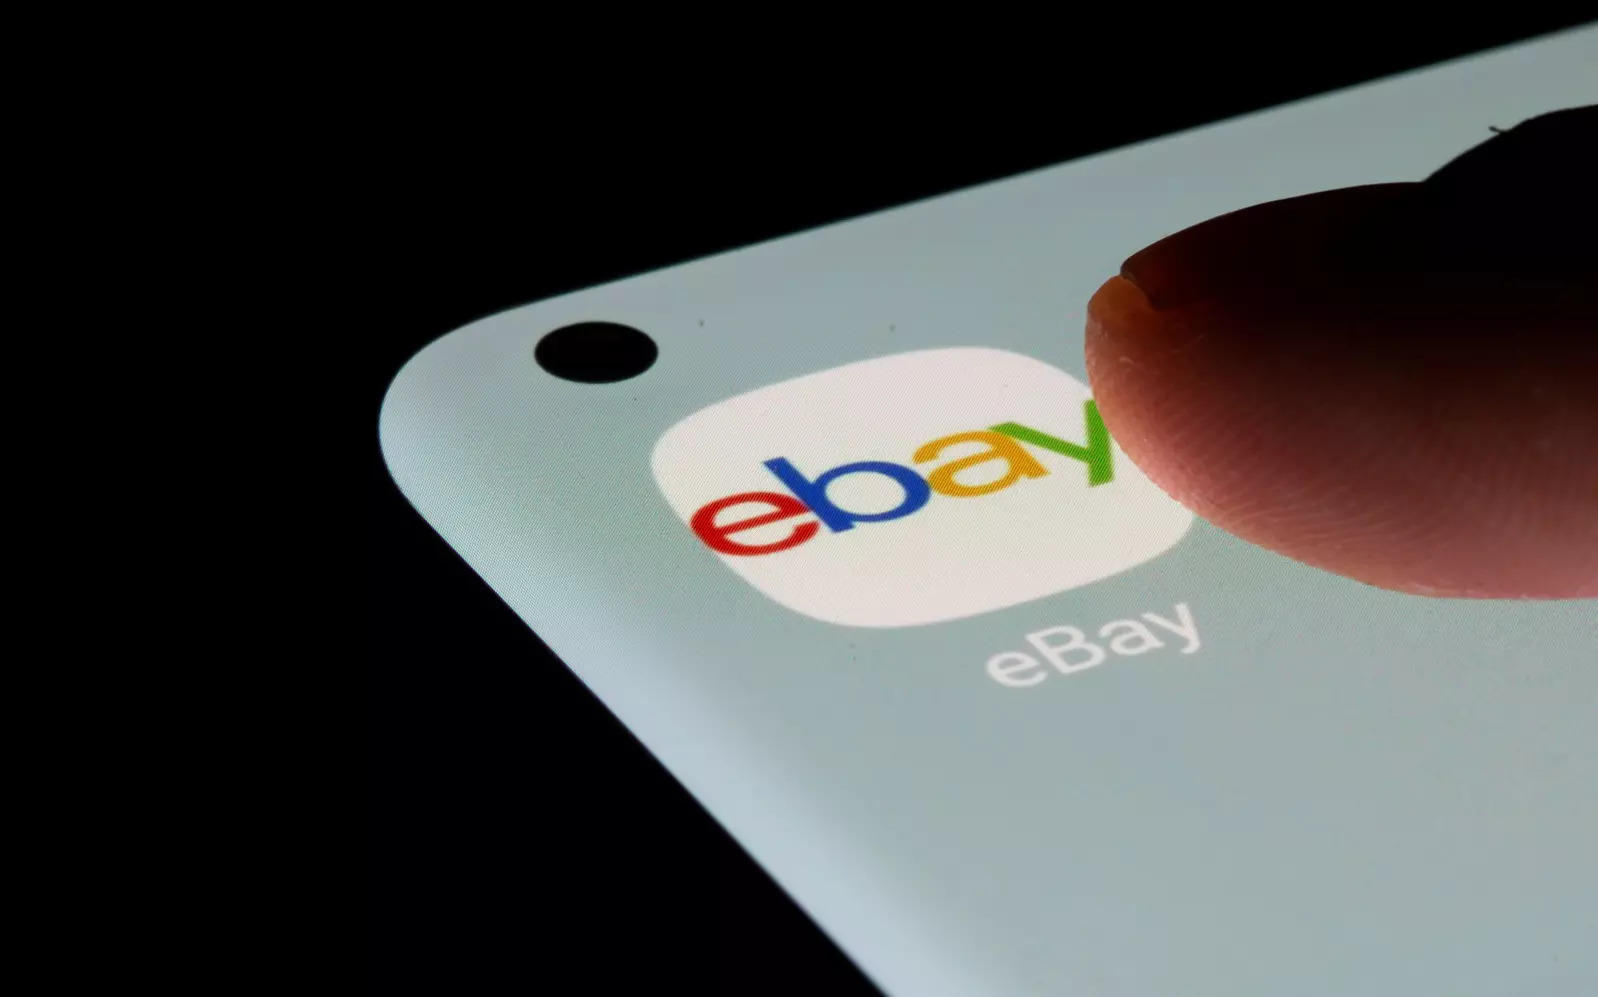 EBay's bleak warning for first half of 2023 slams shares